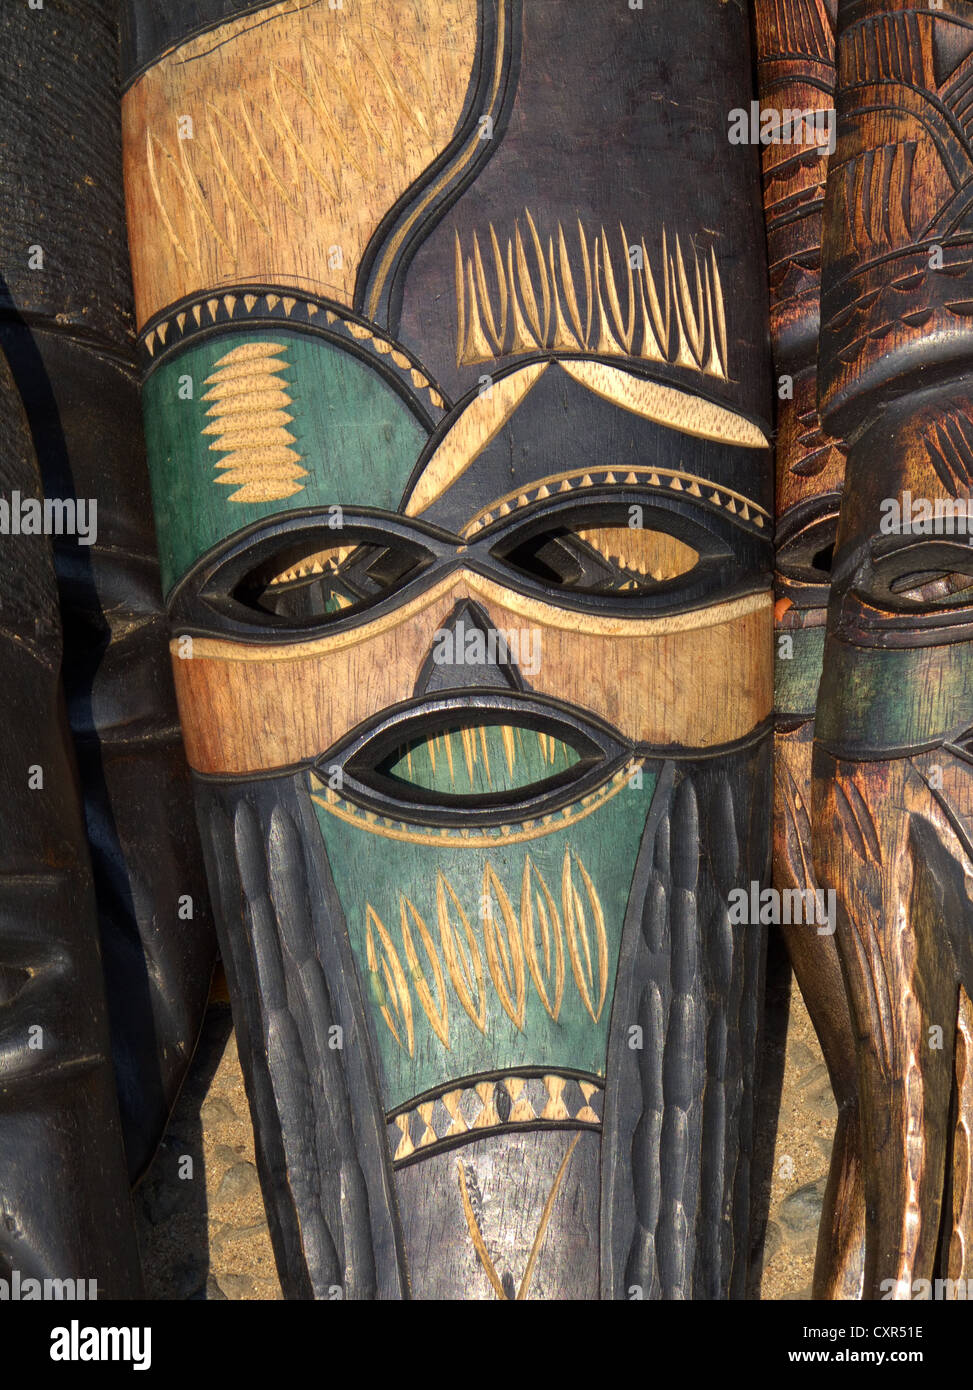 Handgefertigte Holzmaske geschnitzt aus dem Holz von einem afrikanischen Baum geschmückt Stockfoto